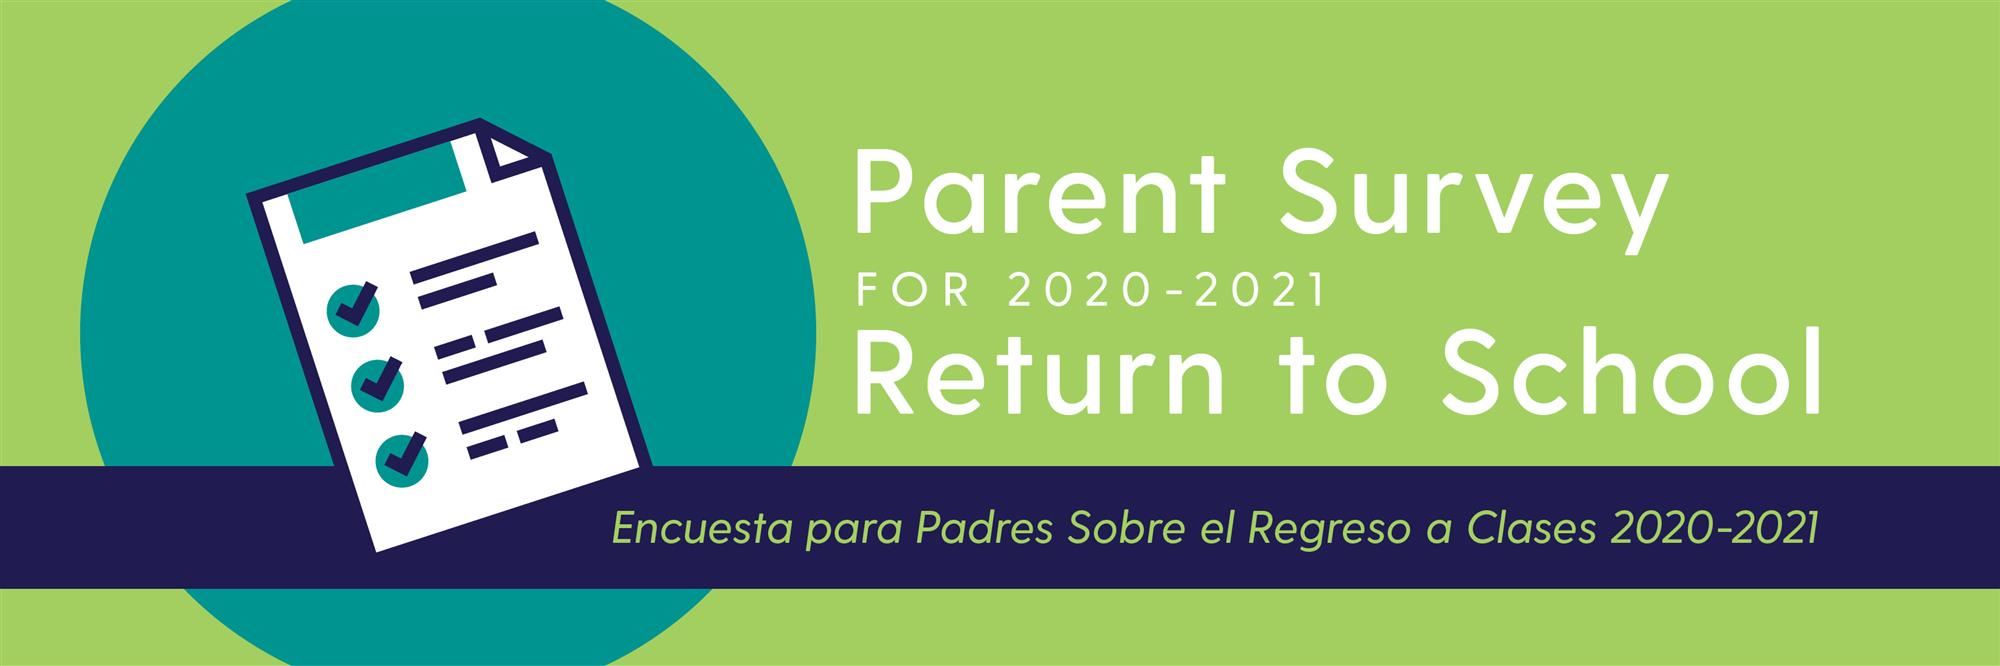 Banner for parent survey 